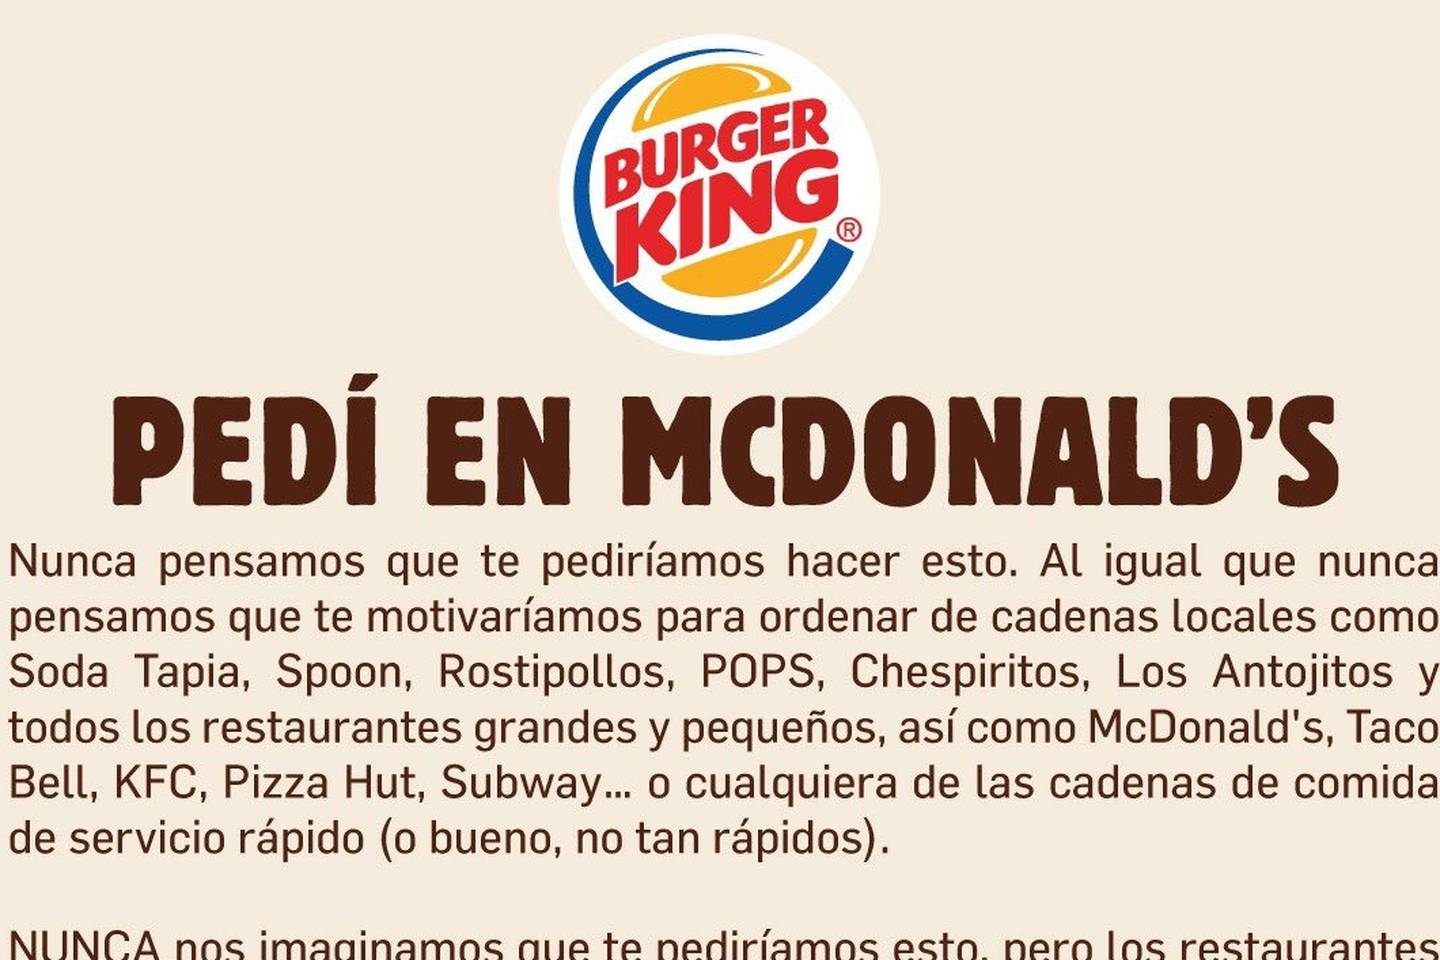 Puede verse como una estrategia publicitaria, de mercadeo, sin embargo, el mundo entero está impactado, y la publicidad ya llegó a Tiquicia, porque Burger King está haciendo campaña mundial para que todos comamos en McDonald’s